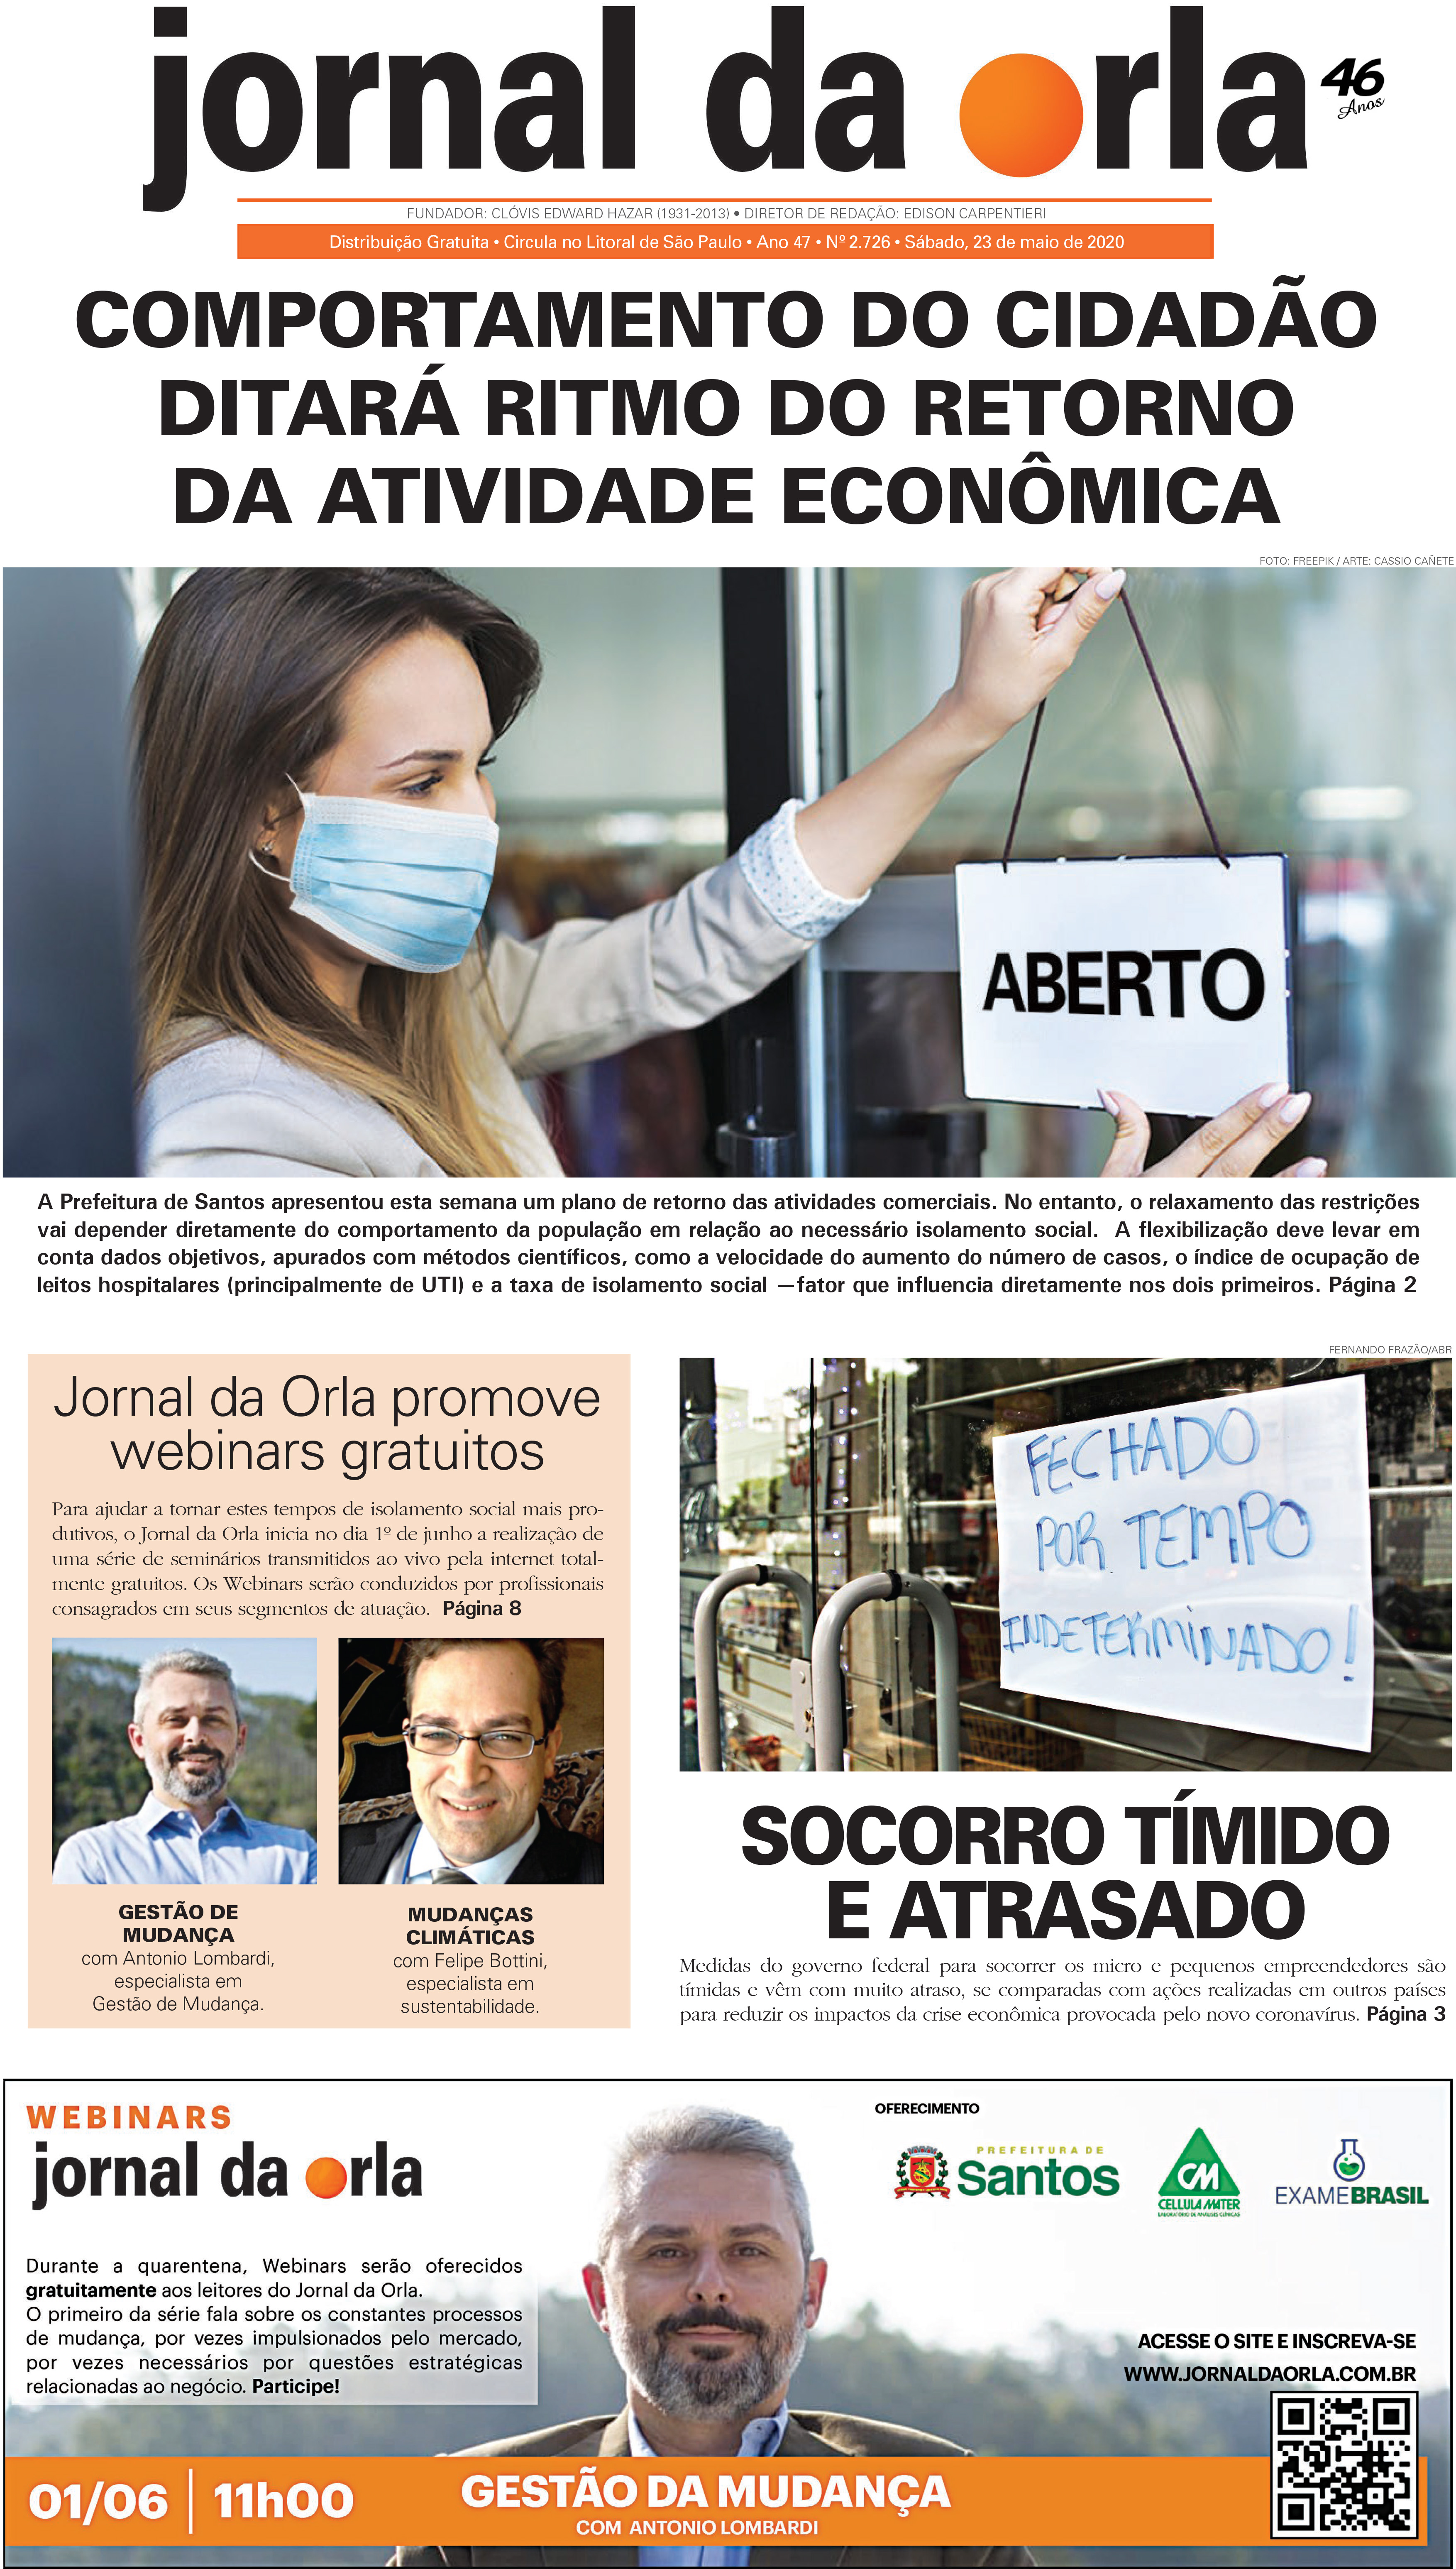 23/05/2020 | Jornal da Orla